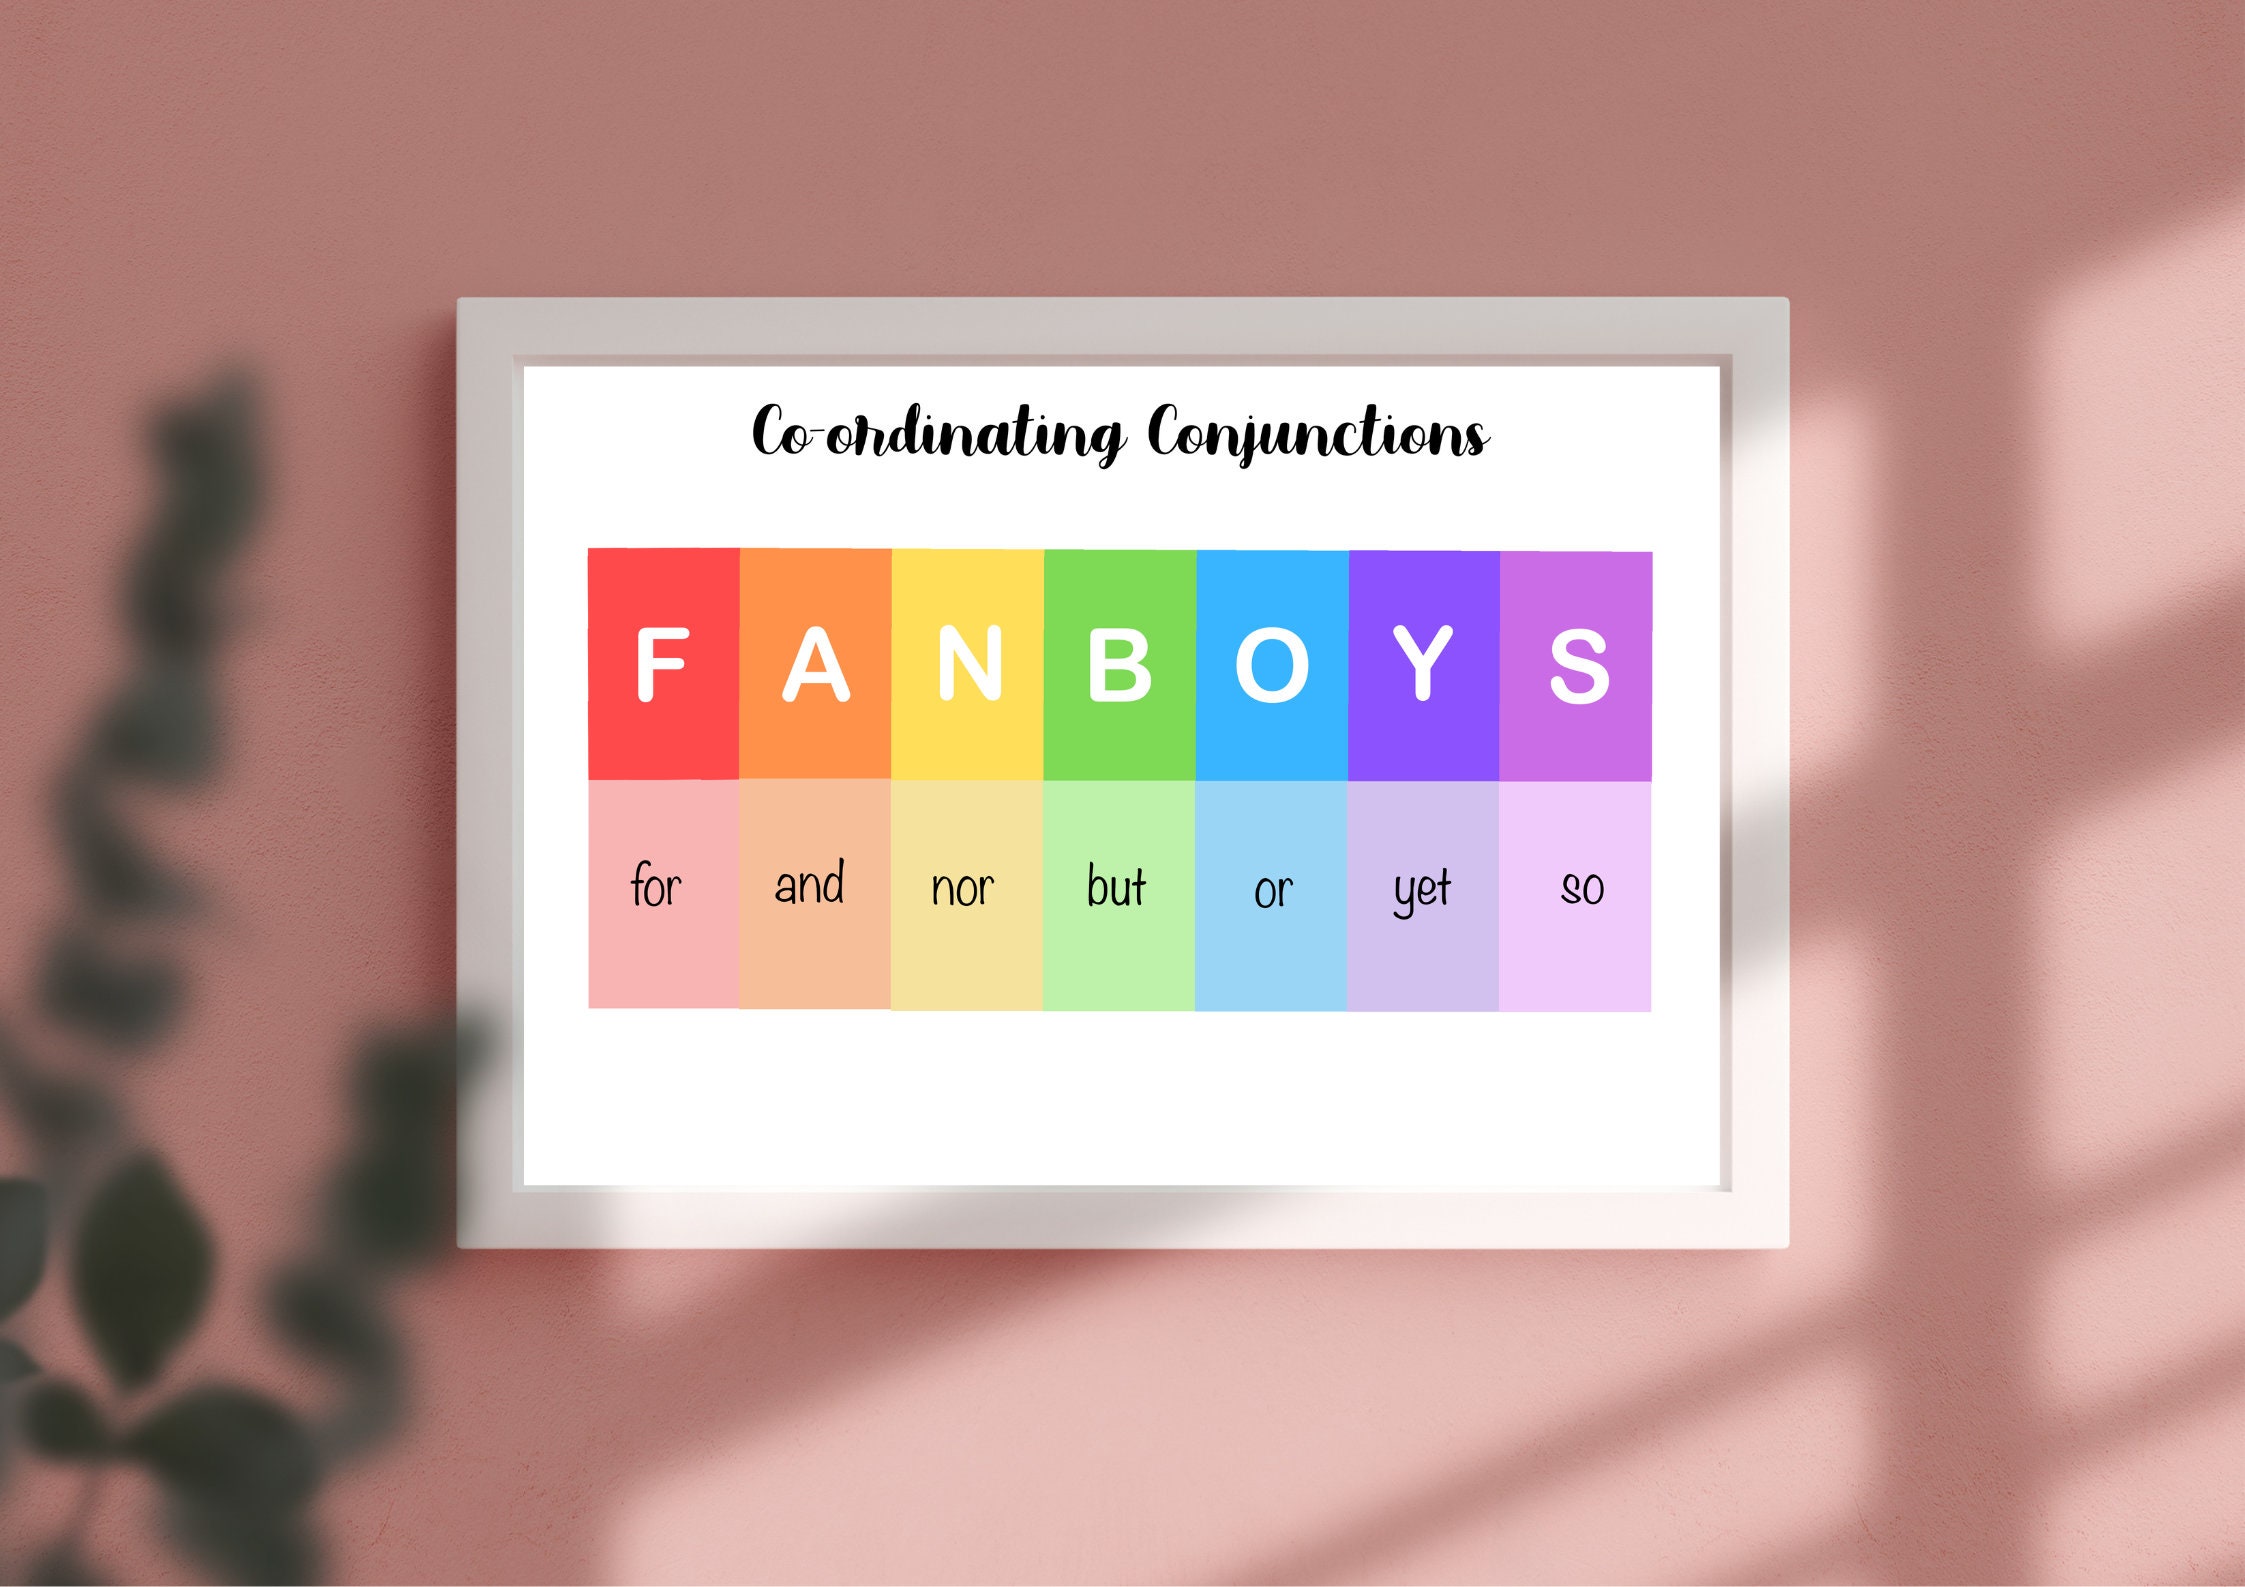 O que significa o FANBOYS? -definições de FANBOYS